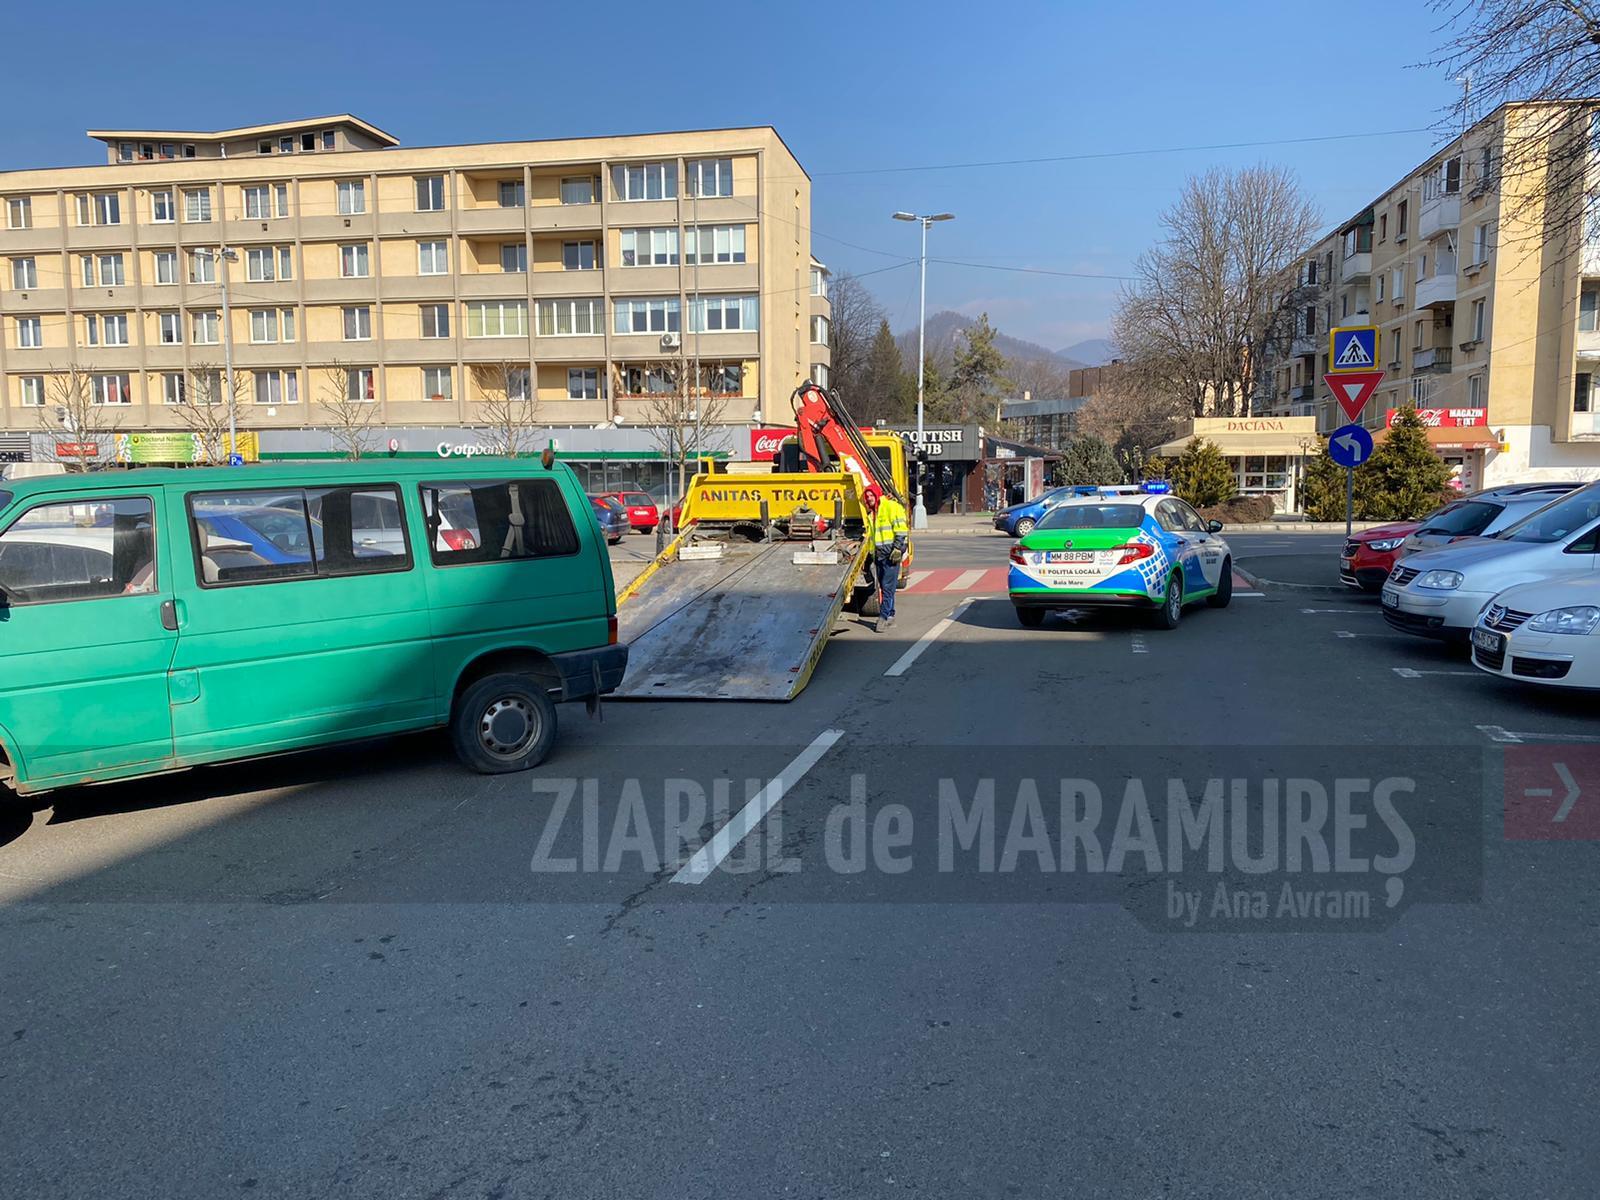 Polițiștii locali au ridicat cinci mașini abandonate de pe străzile George Coșbuc și Motorului, din Piața Revolutiei, dar și de pe Bulevardul Republicii